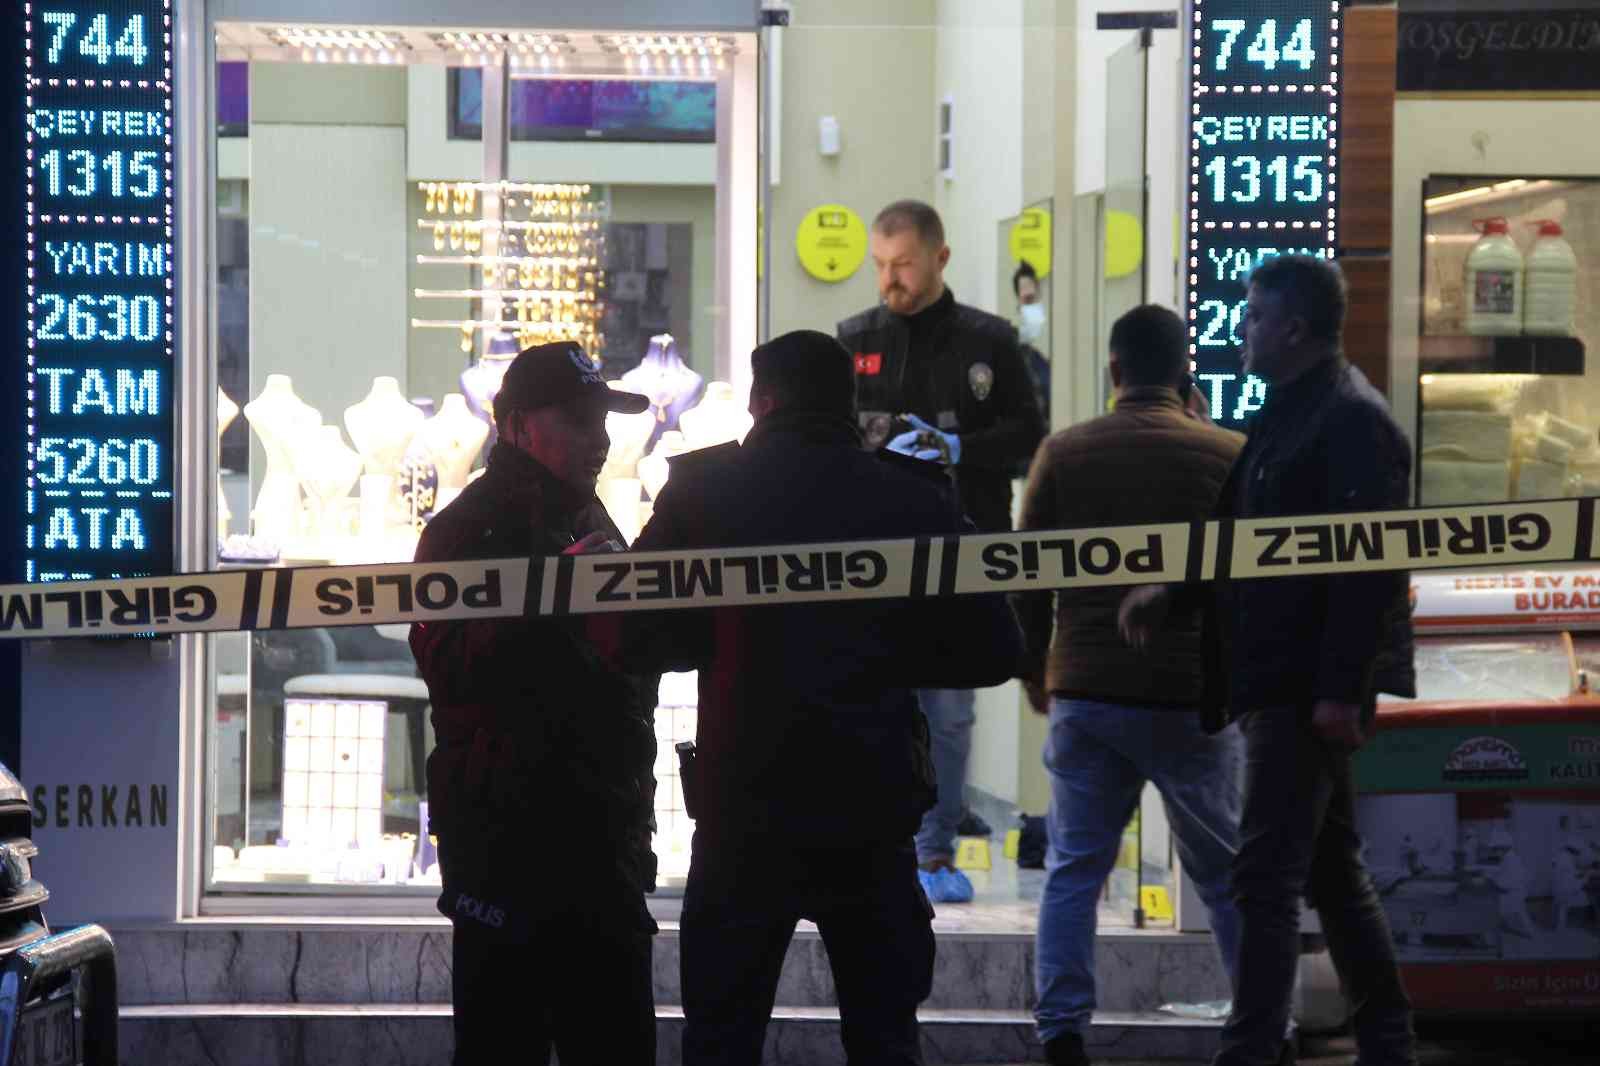 İzmir’de kuyumcuyu silahla vurup altınları çalan şüpheli yakalandı #izmir